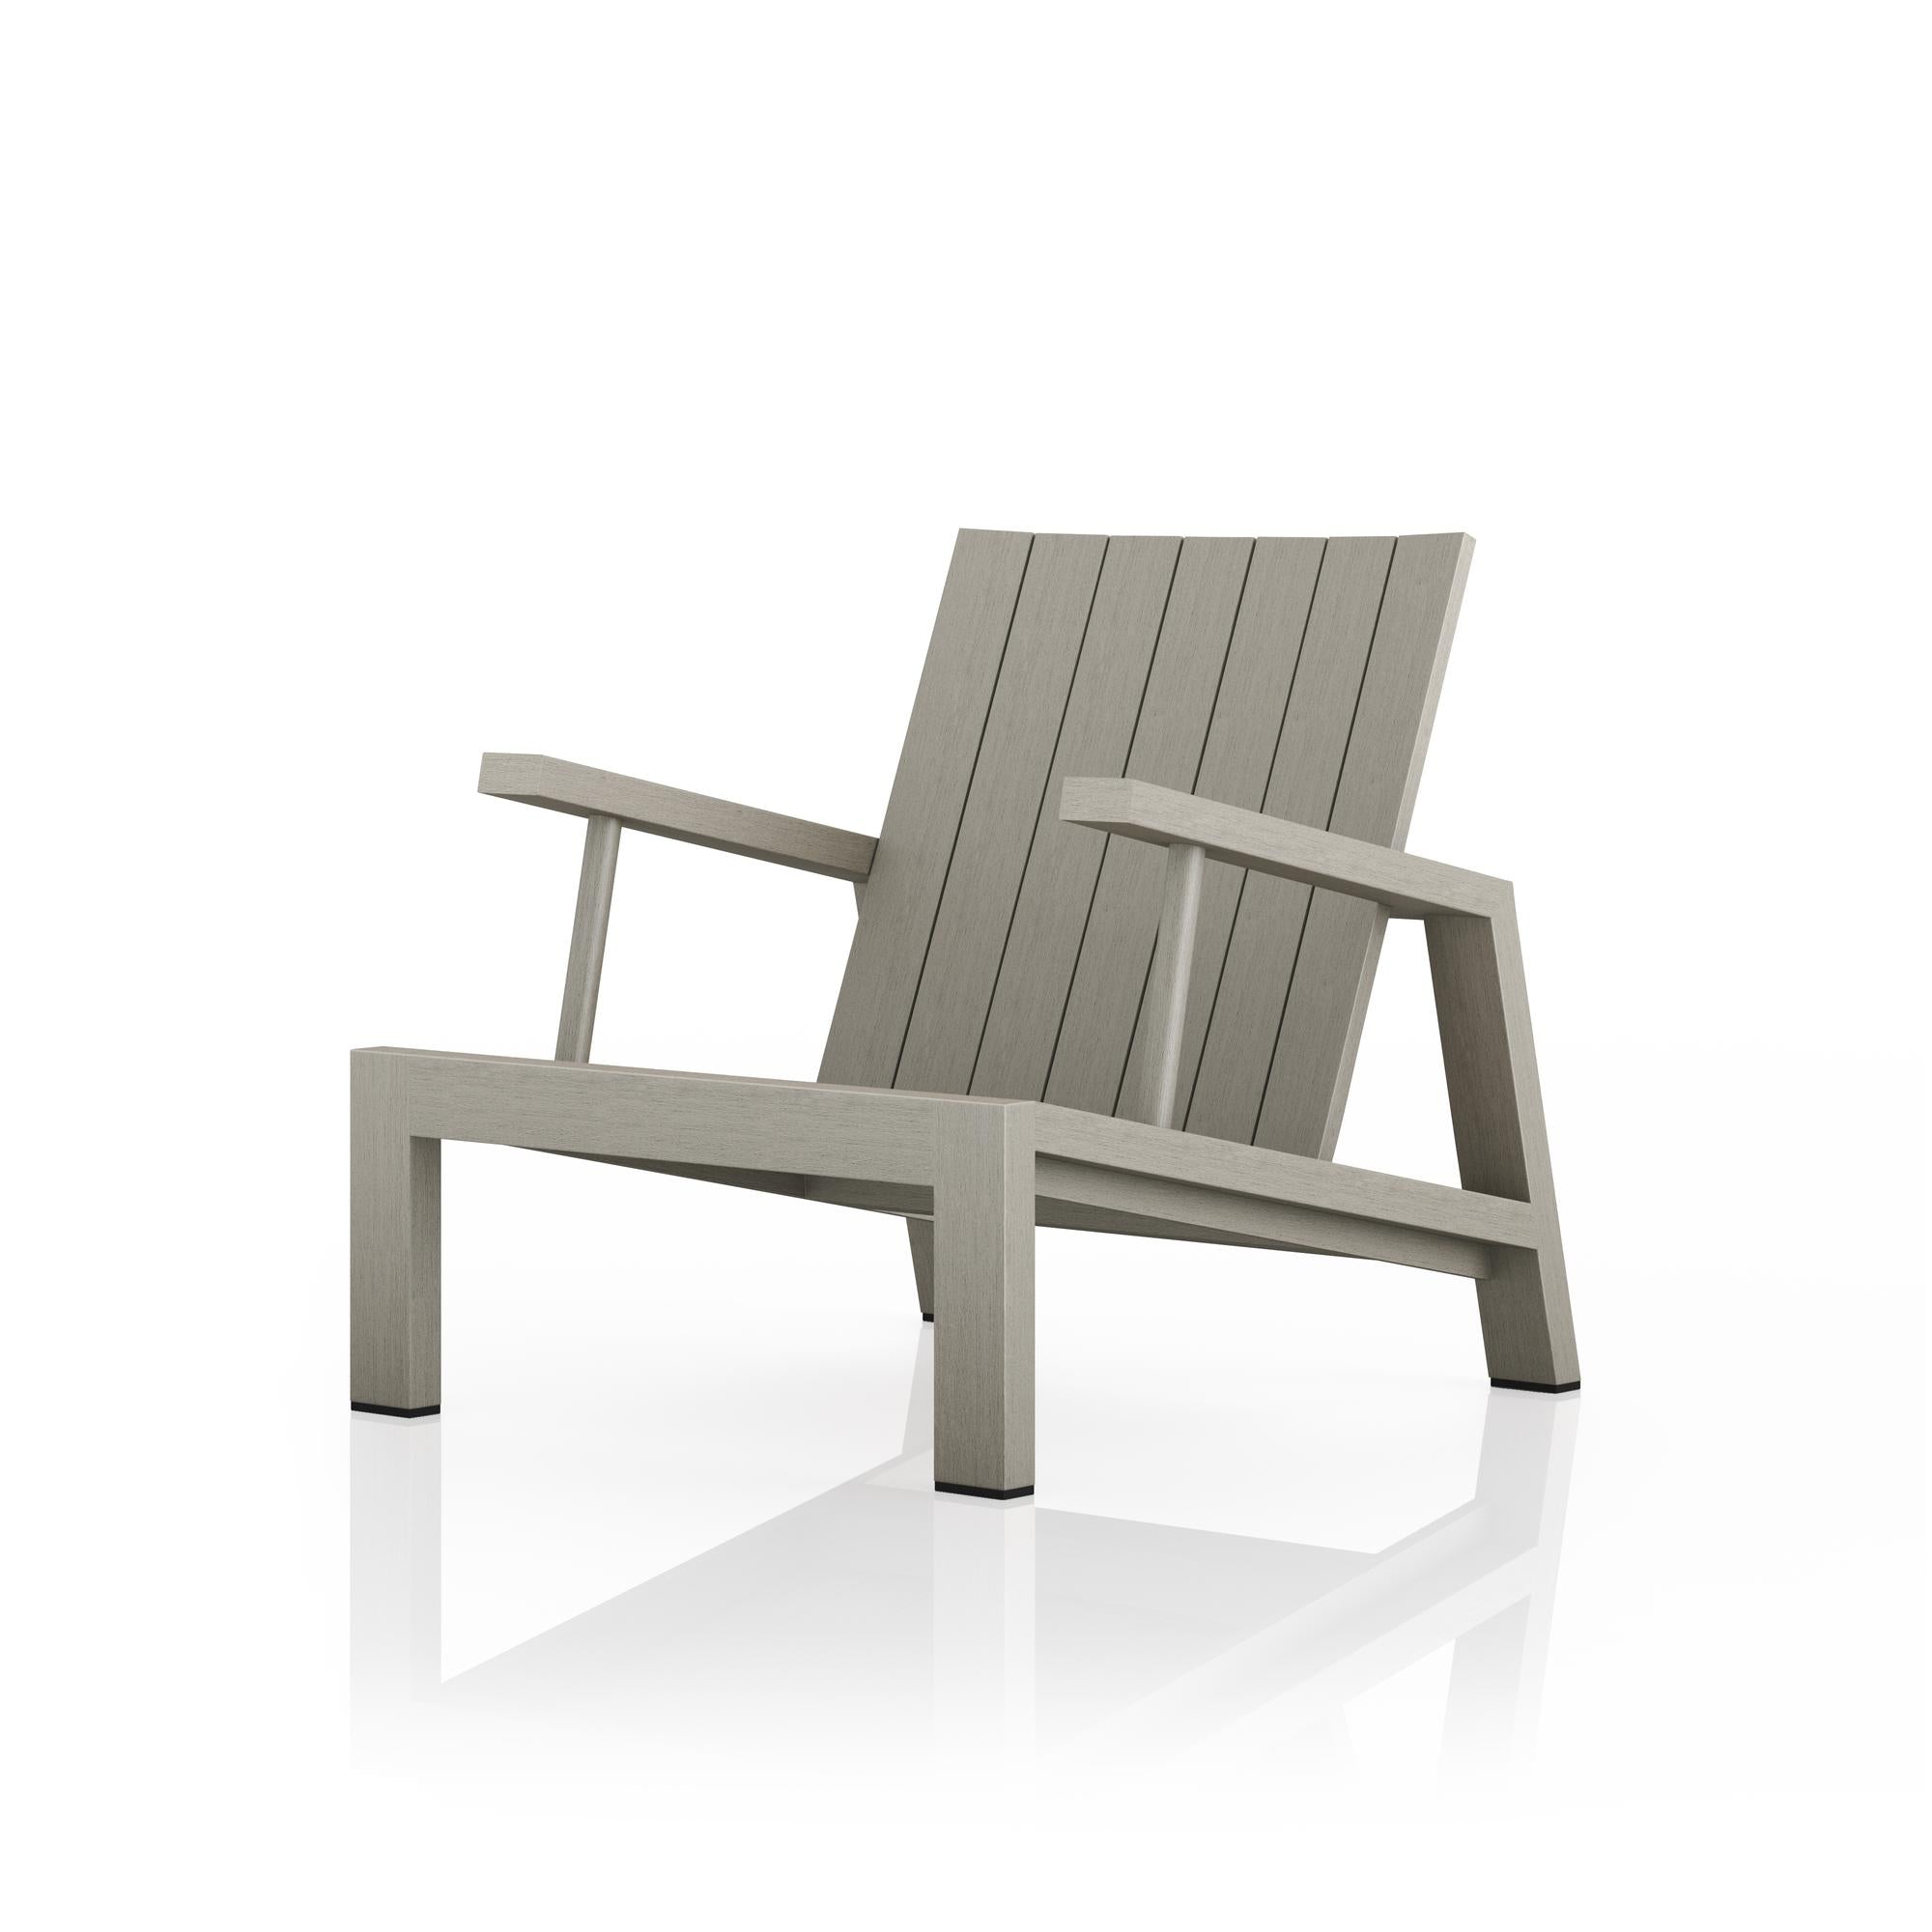 Dorsey Outdoor Chair - StyleMeGHD - Modern Outdoor Furniture